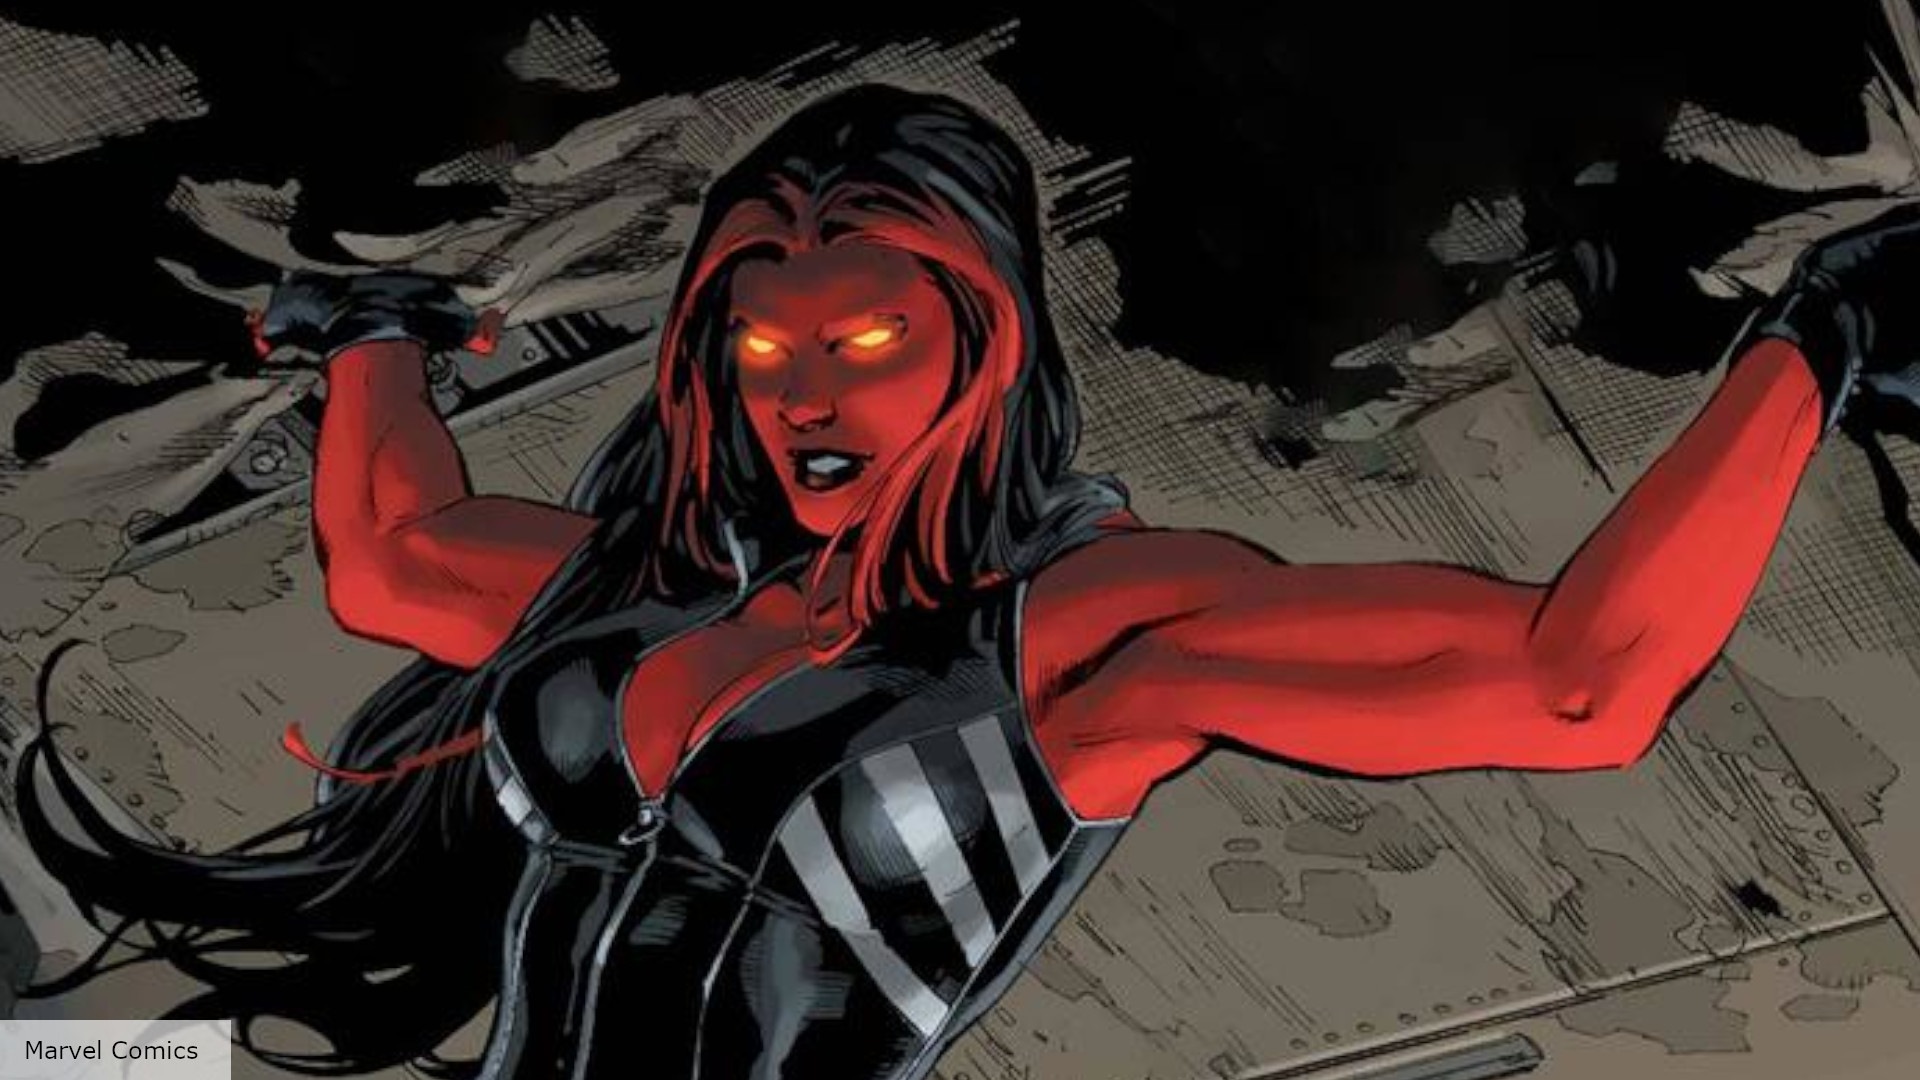 She-Hulk: will we see a Red Hulk? | The Digital Fix